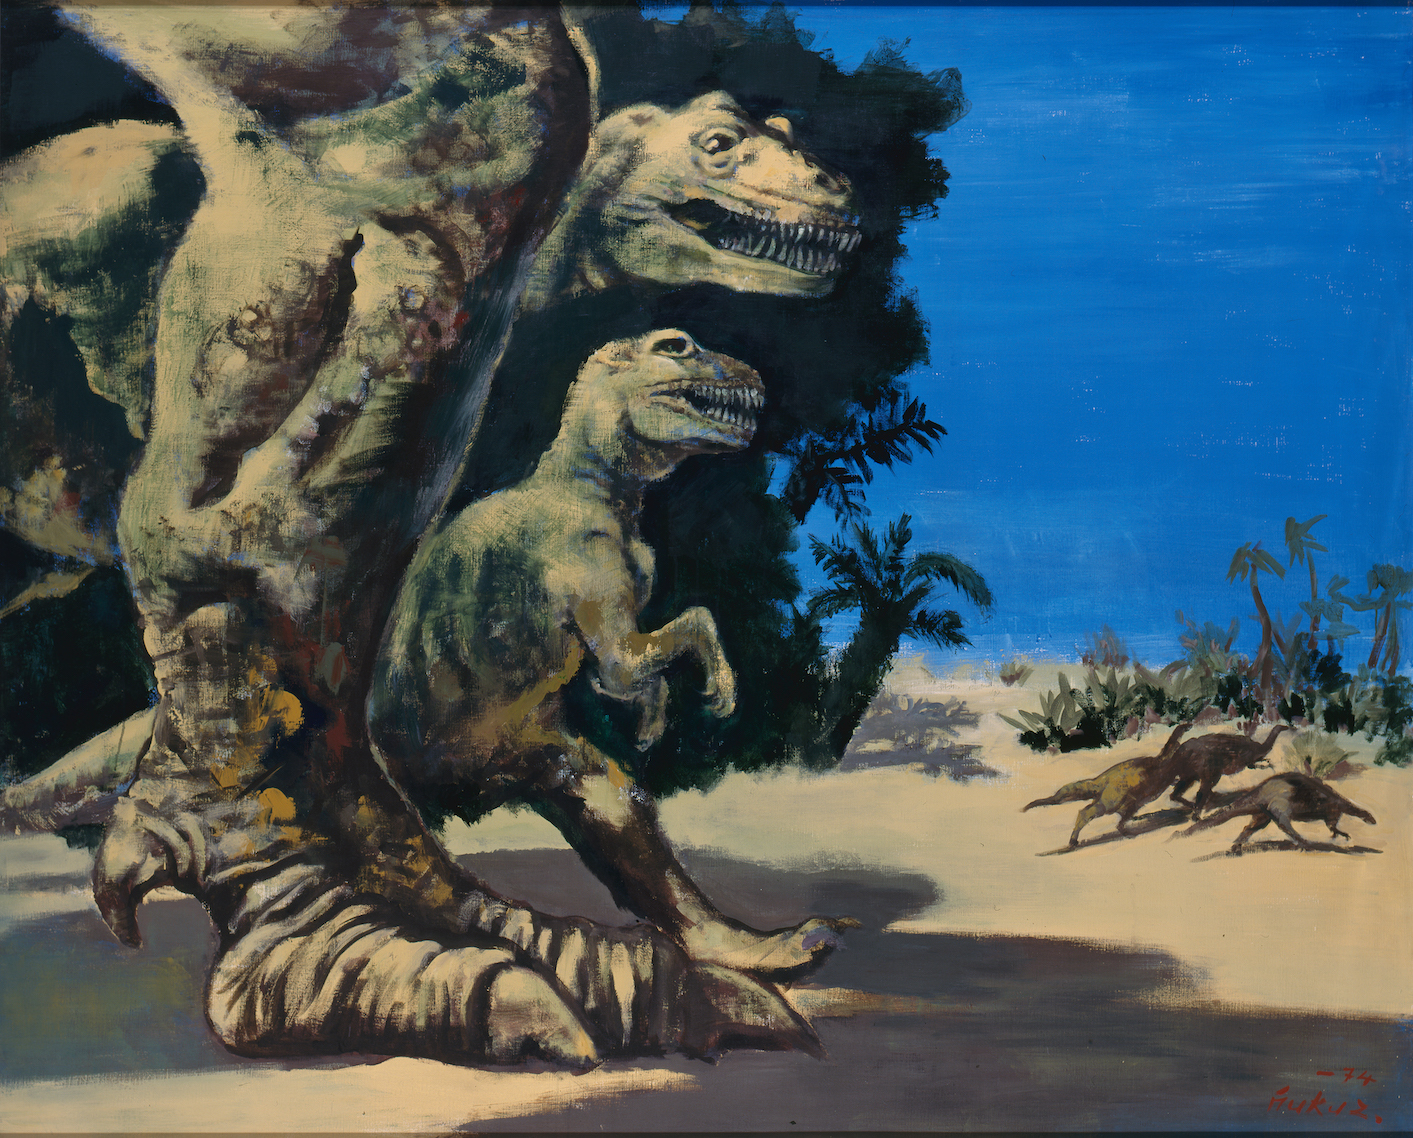 福沢一郎 「爬虫類はびこる」 1974年 アクリル・カンヴァス 181.8 × 227.3cm 富岡市立美術博物館・福沢一郎記念美術館